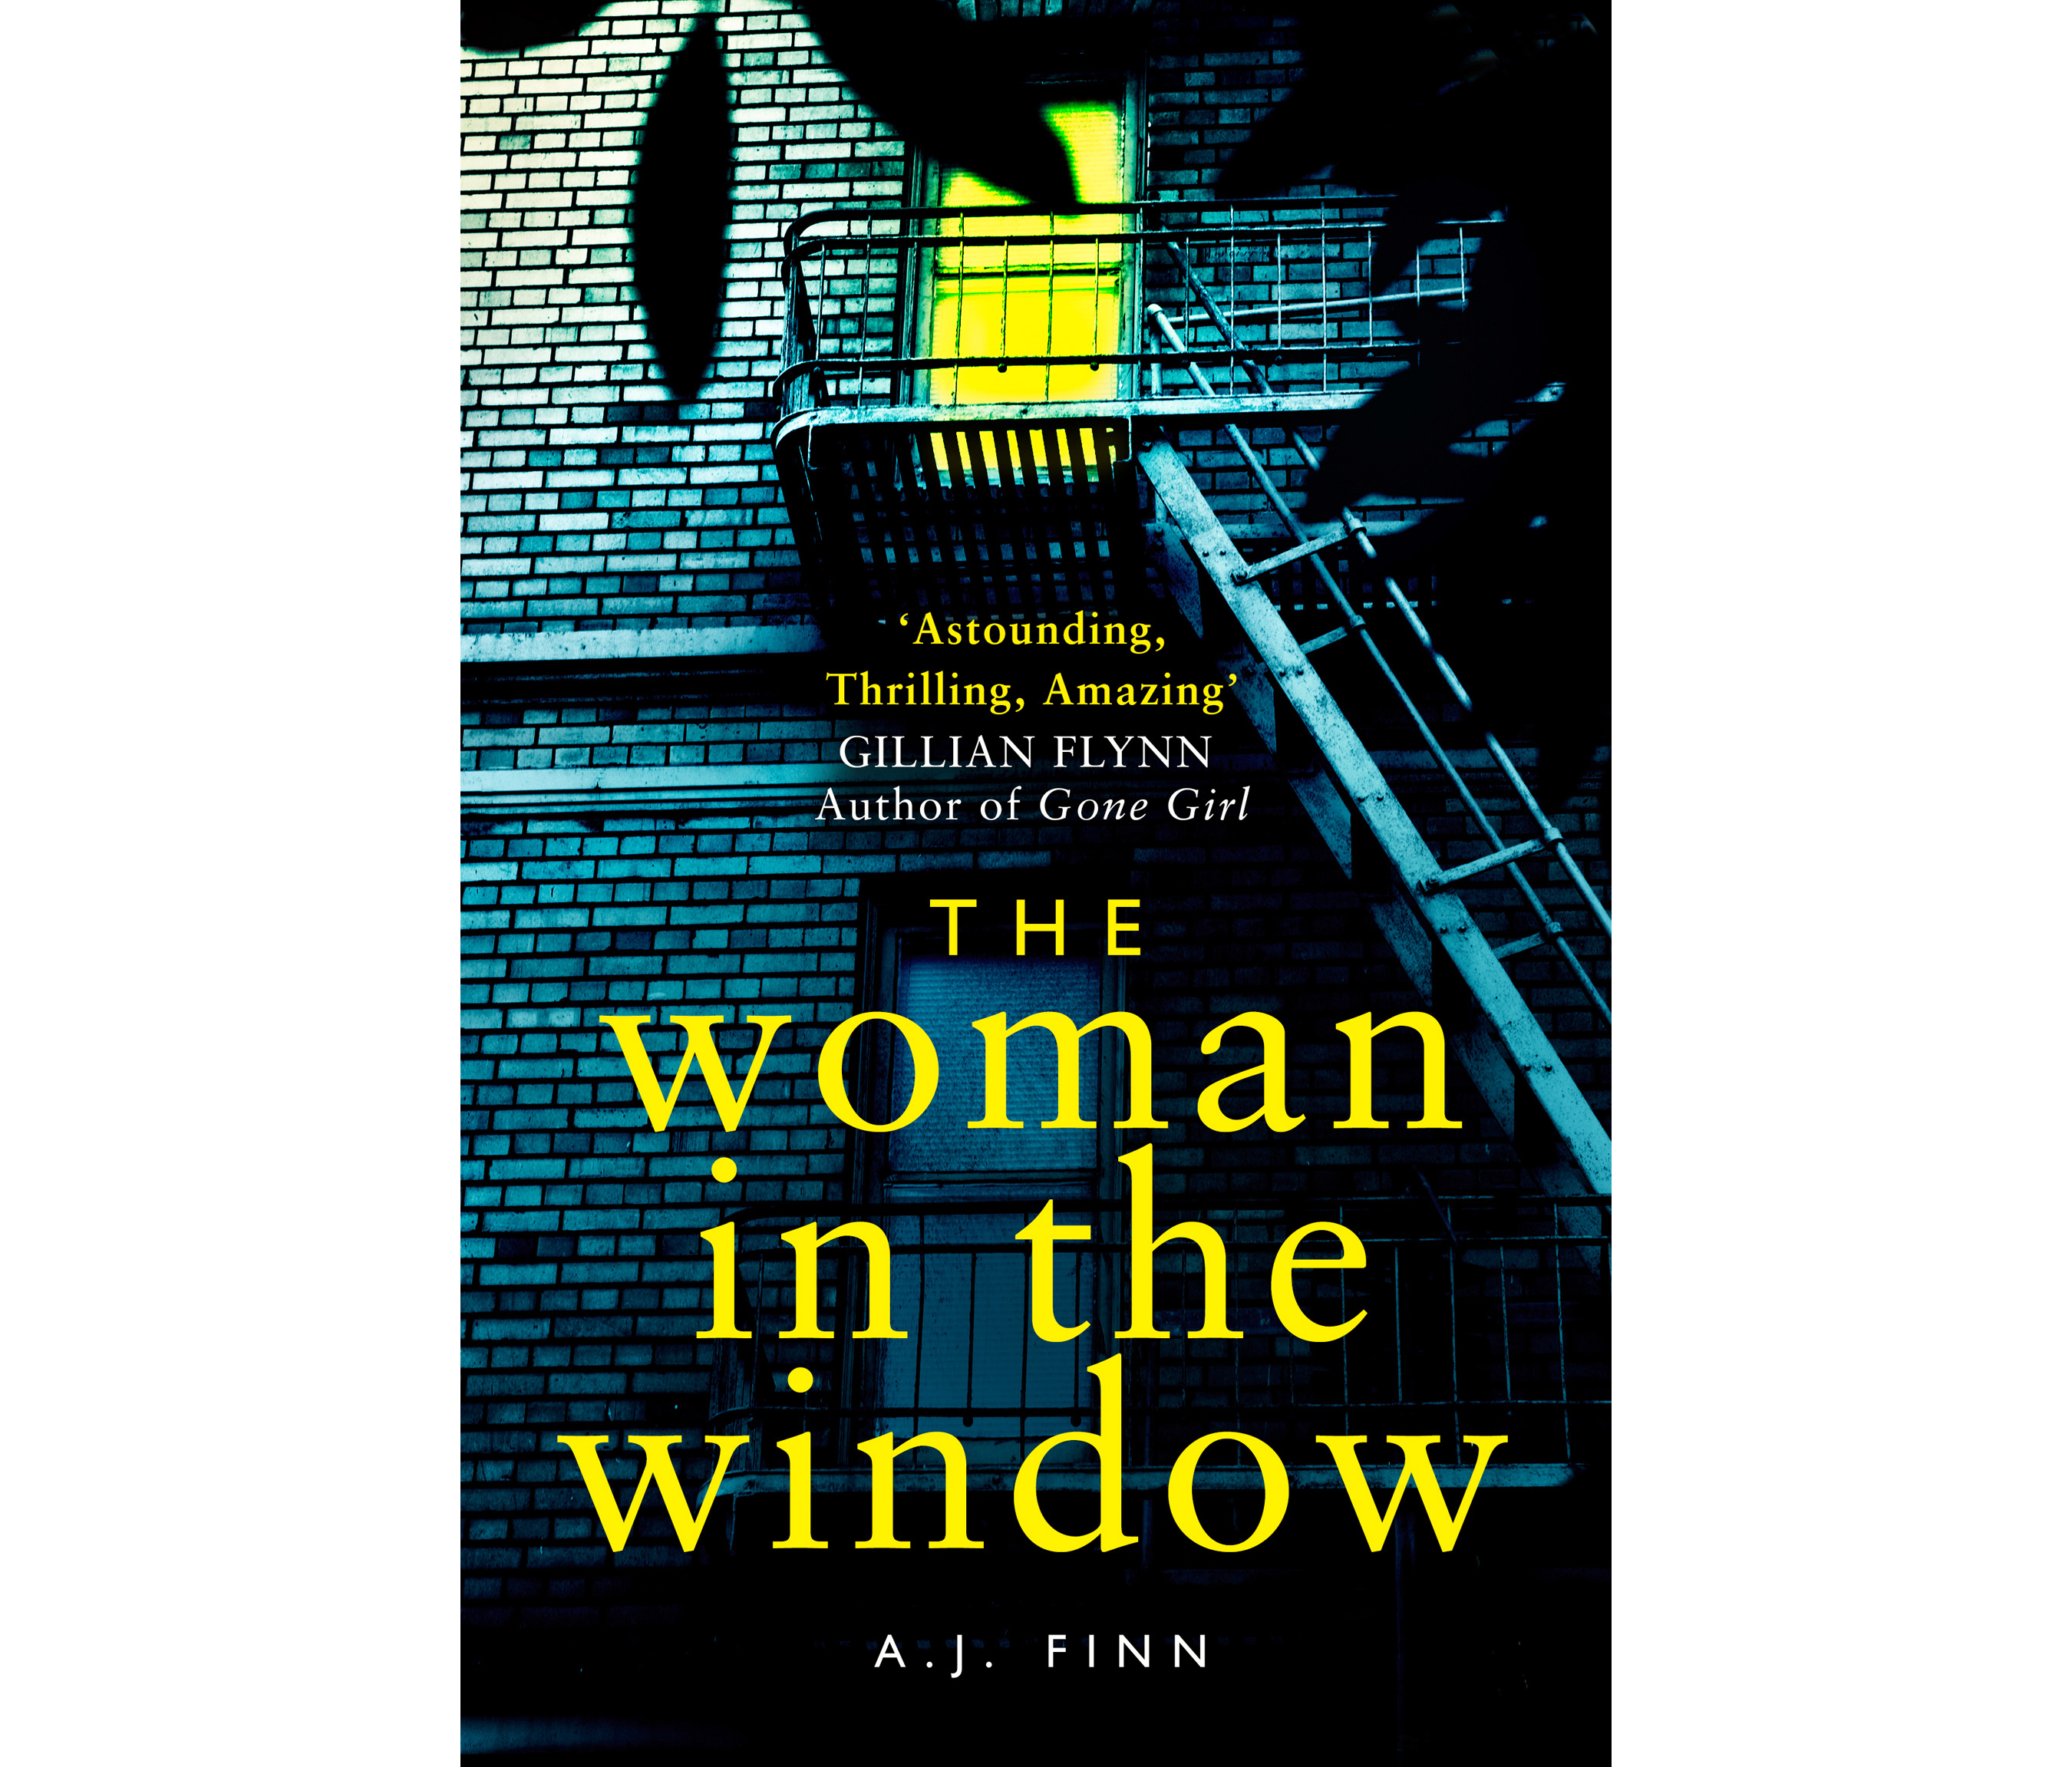 The Woman In The Window by AJ Finn (HarperCollins/PA)